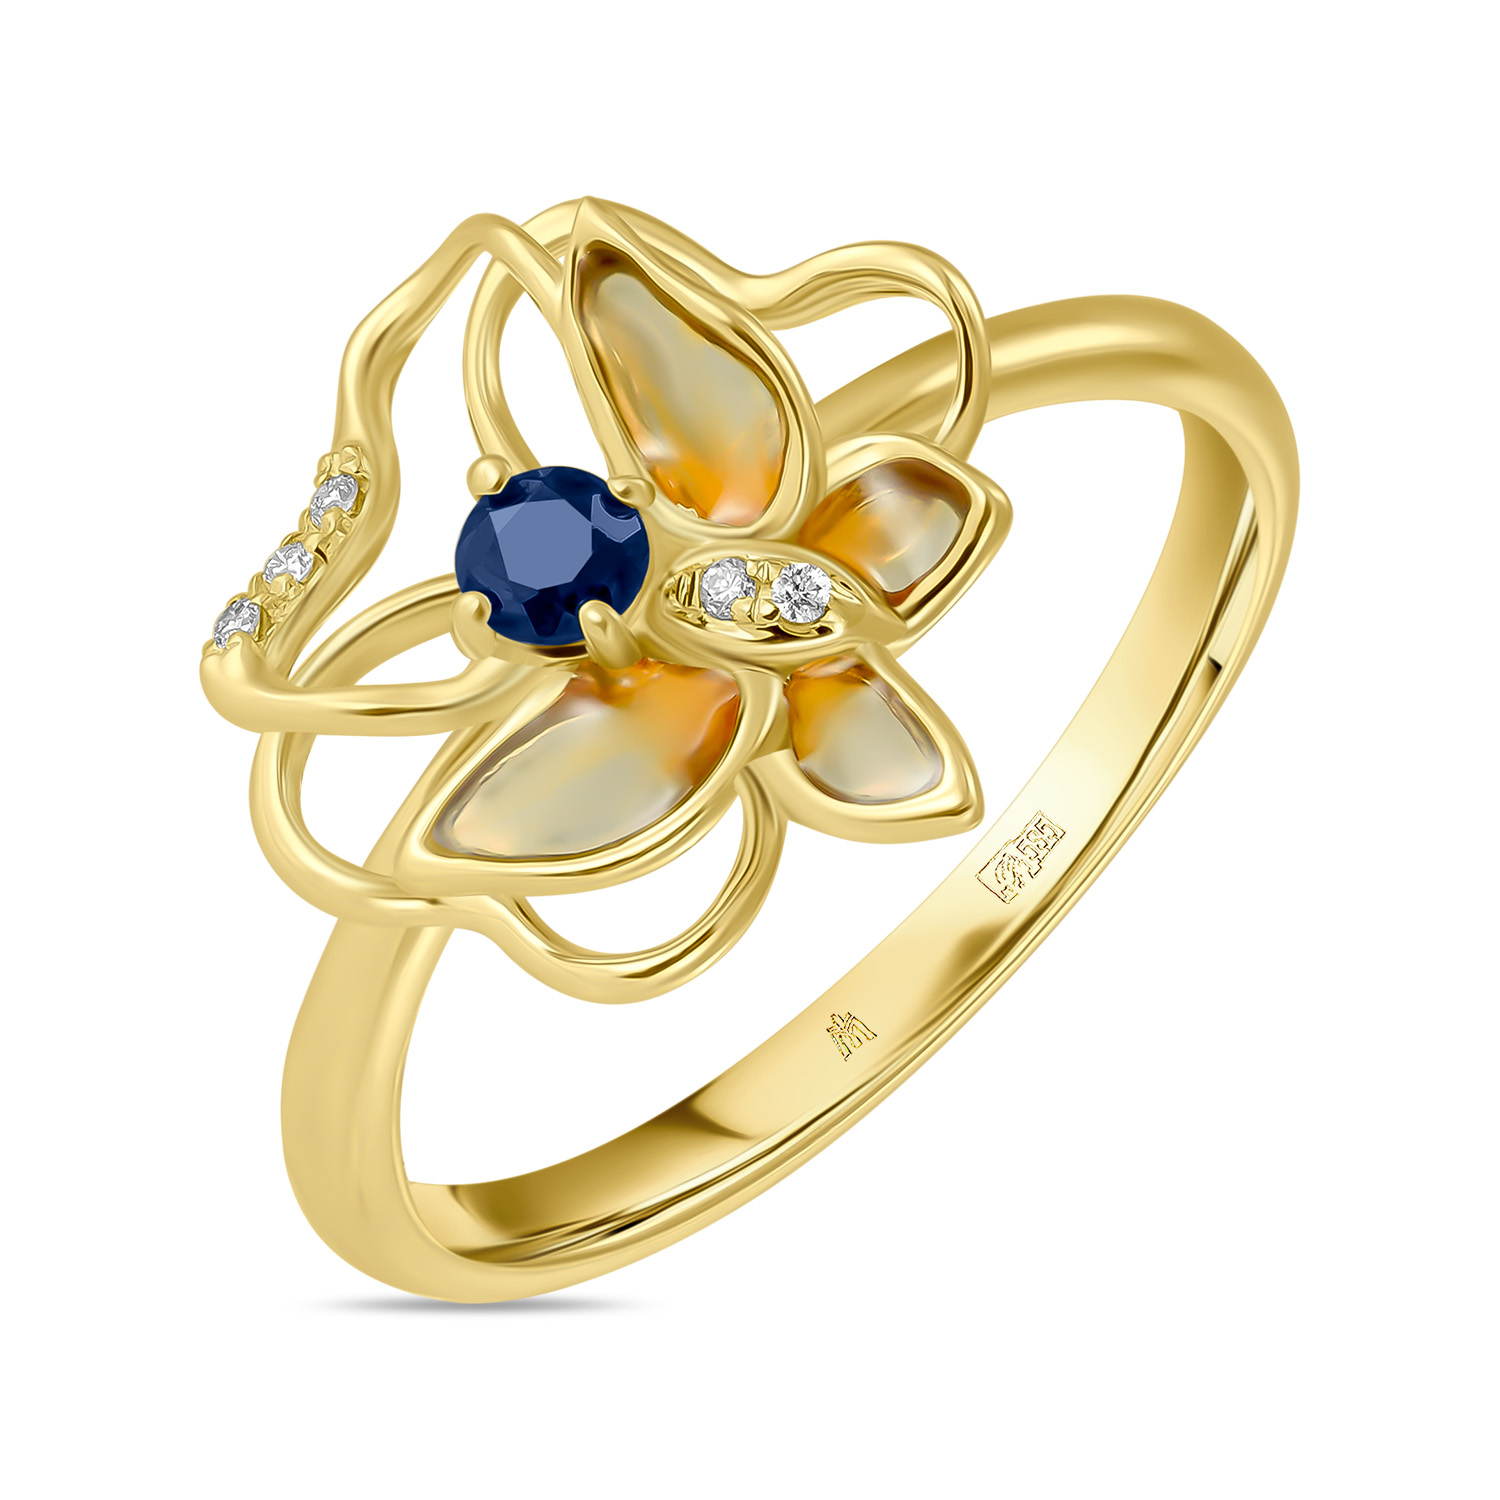 Кольца МЮЗ Золотое кольцо с бриллиантами, эмалью и сапфиром кольца мюз золотое кольцо с бриллиантами и эмалью